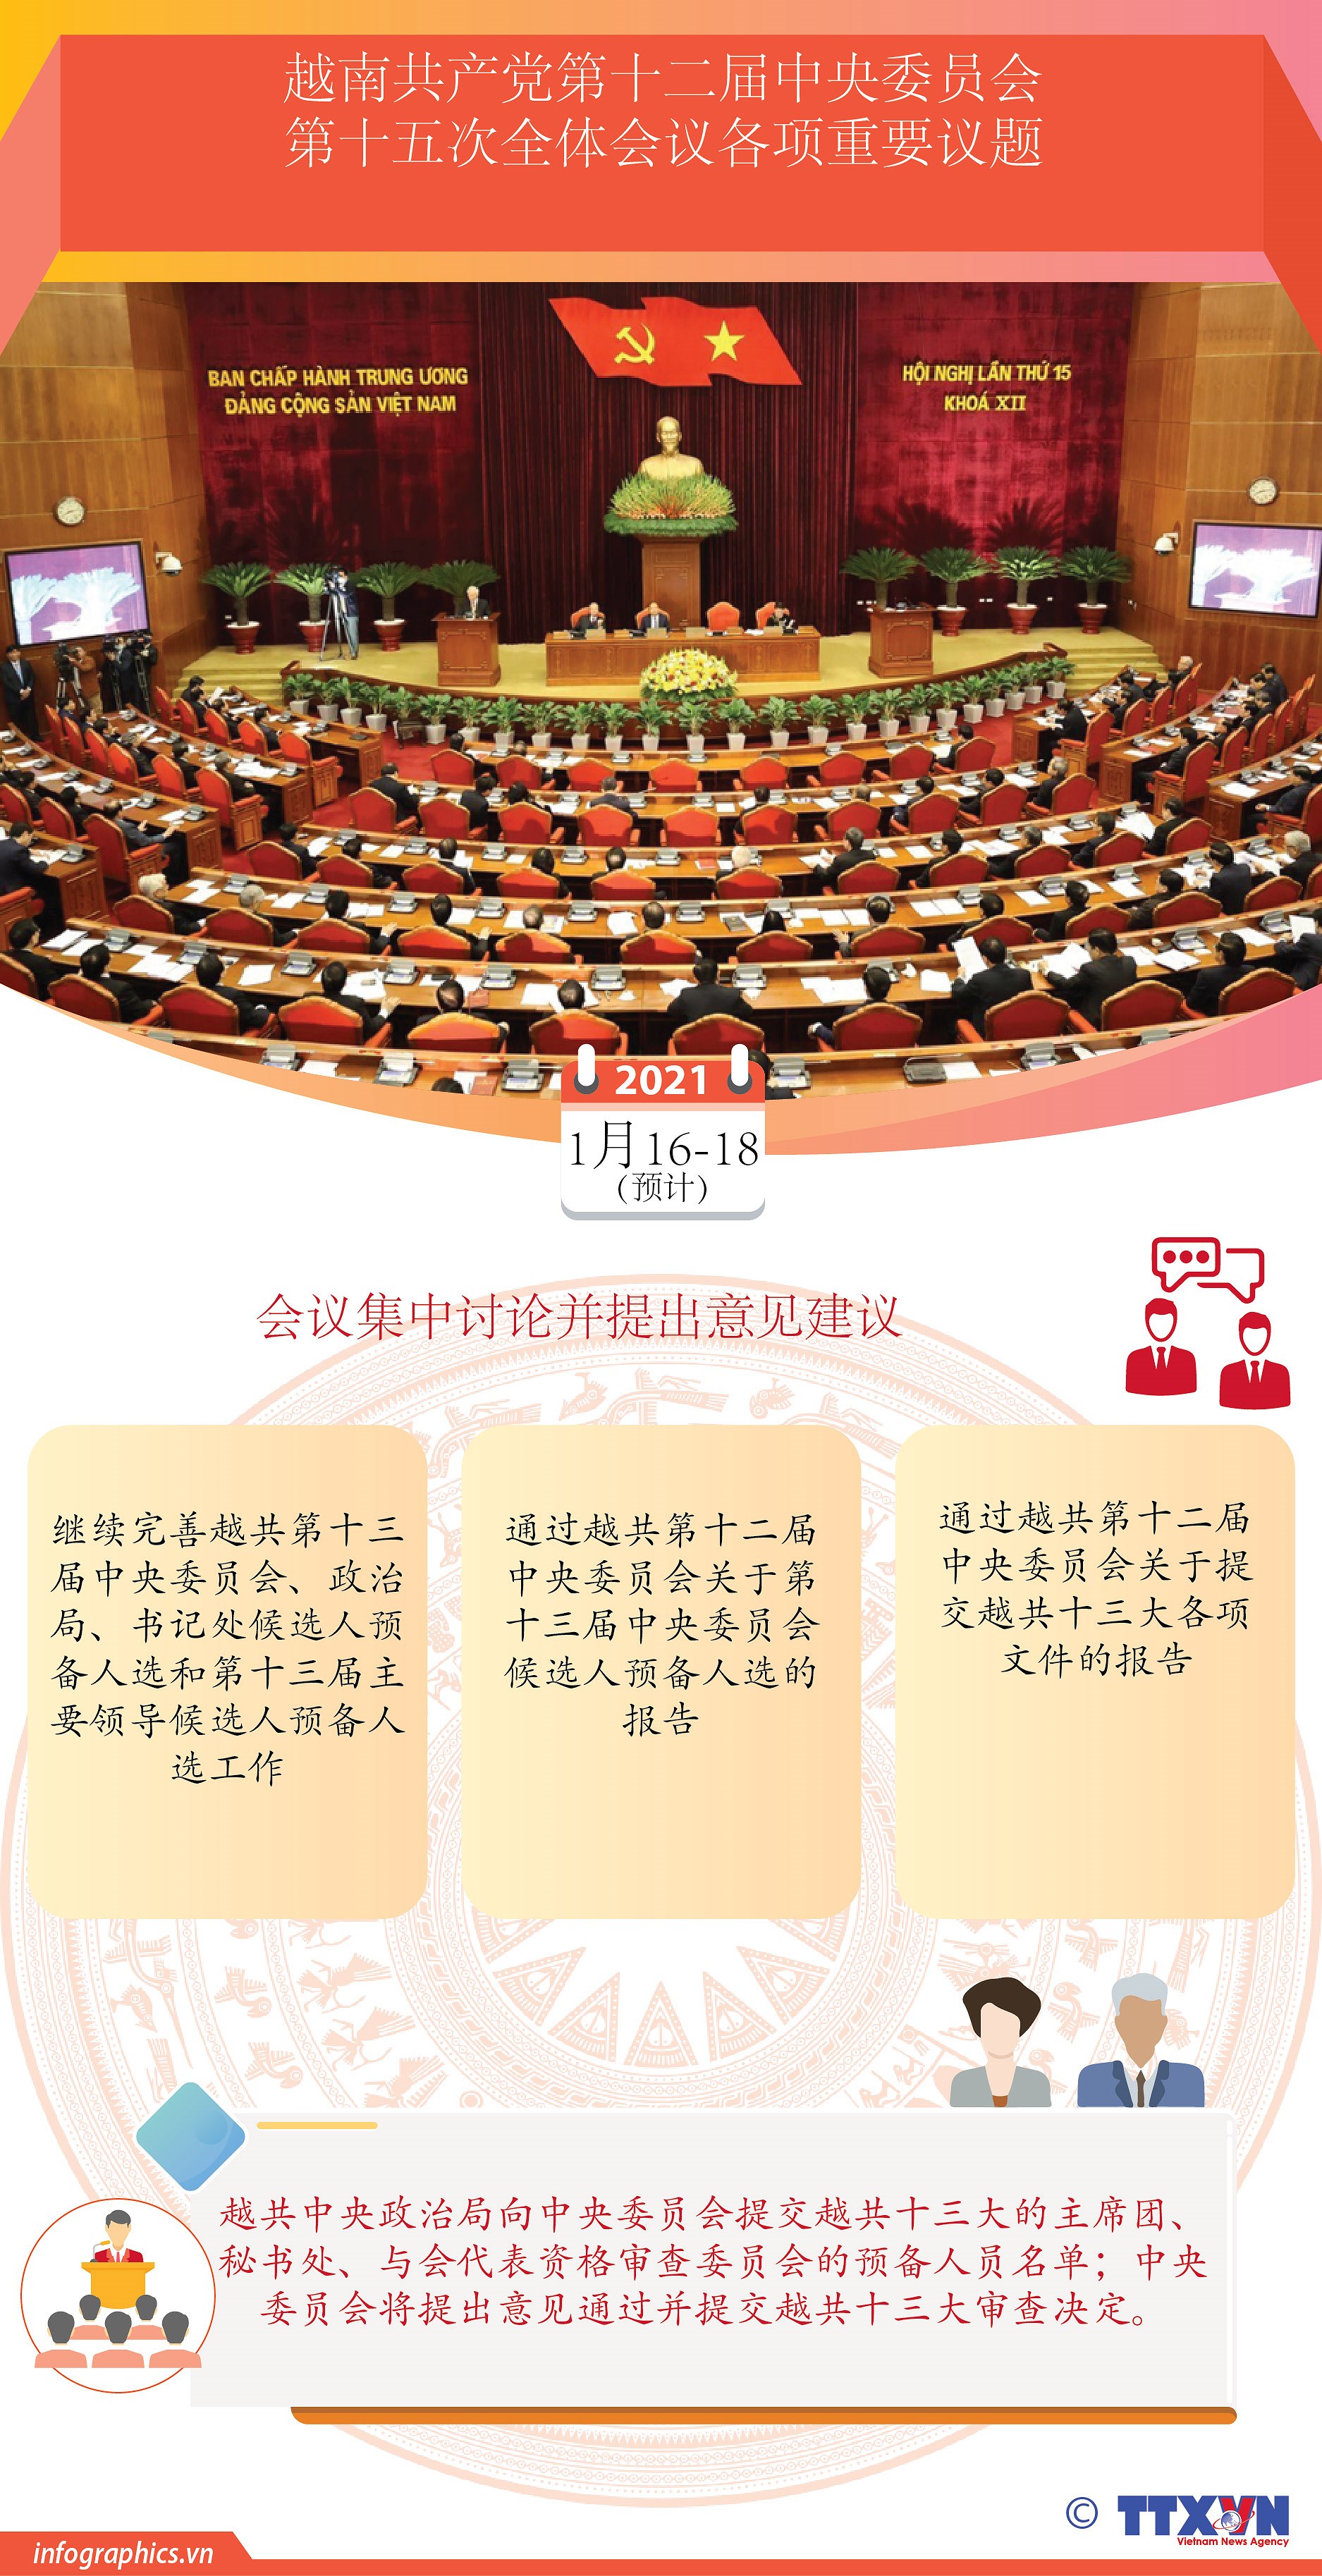 图表新闻：越南共产党第十二届中央委员会第十五次全体会议各项重要议题 hinh anh 1